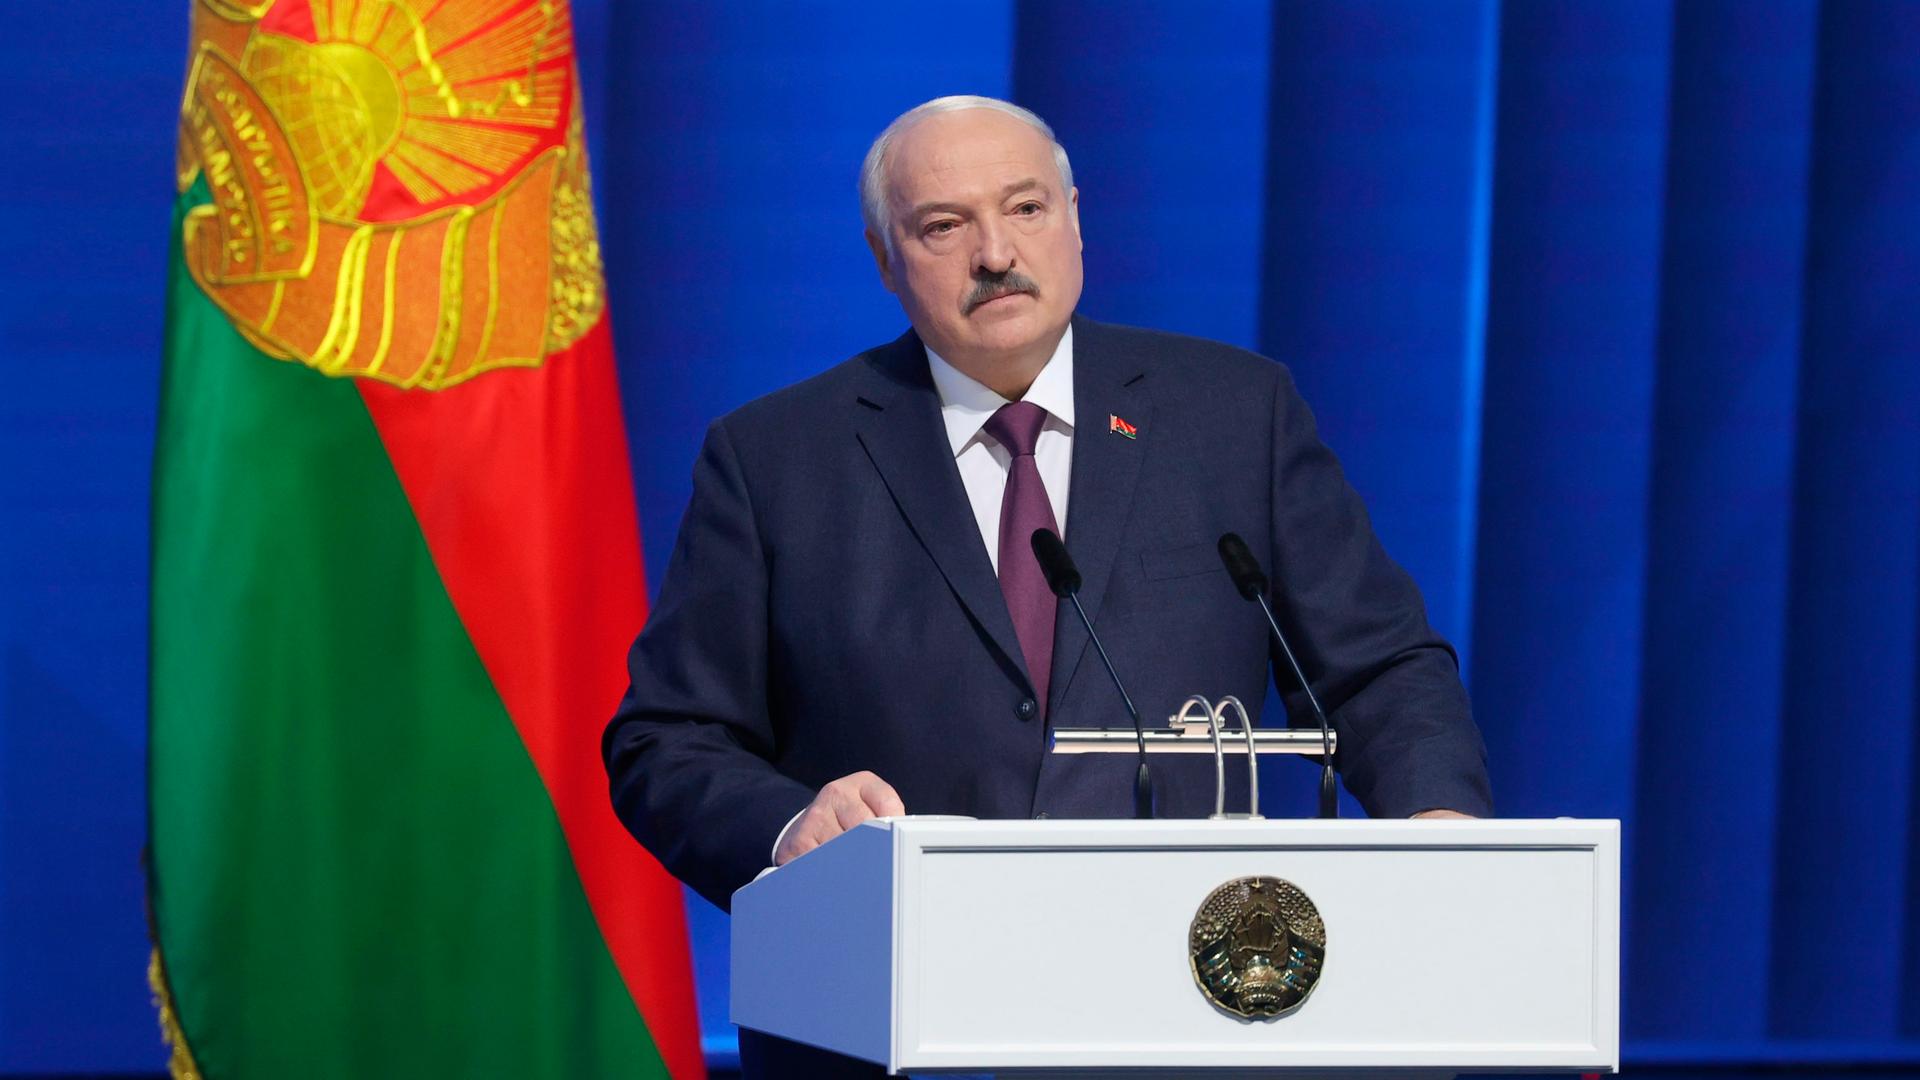 Der belarussische Präsident Lukaschenko steht hinter einem Rednerpult. Hinter ihm ein blauer Vorhang und die belarussische Fahne.